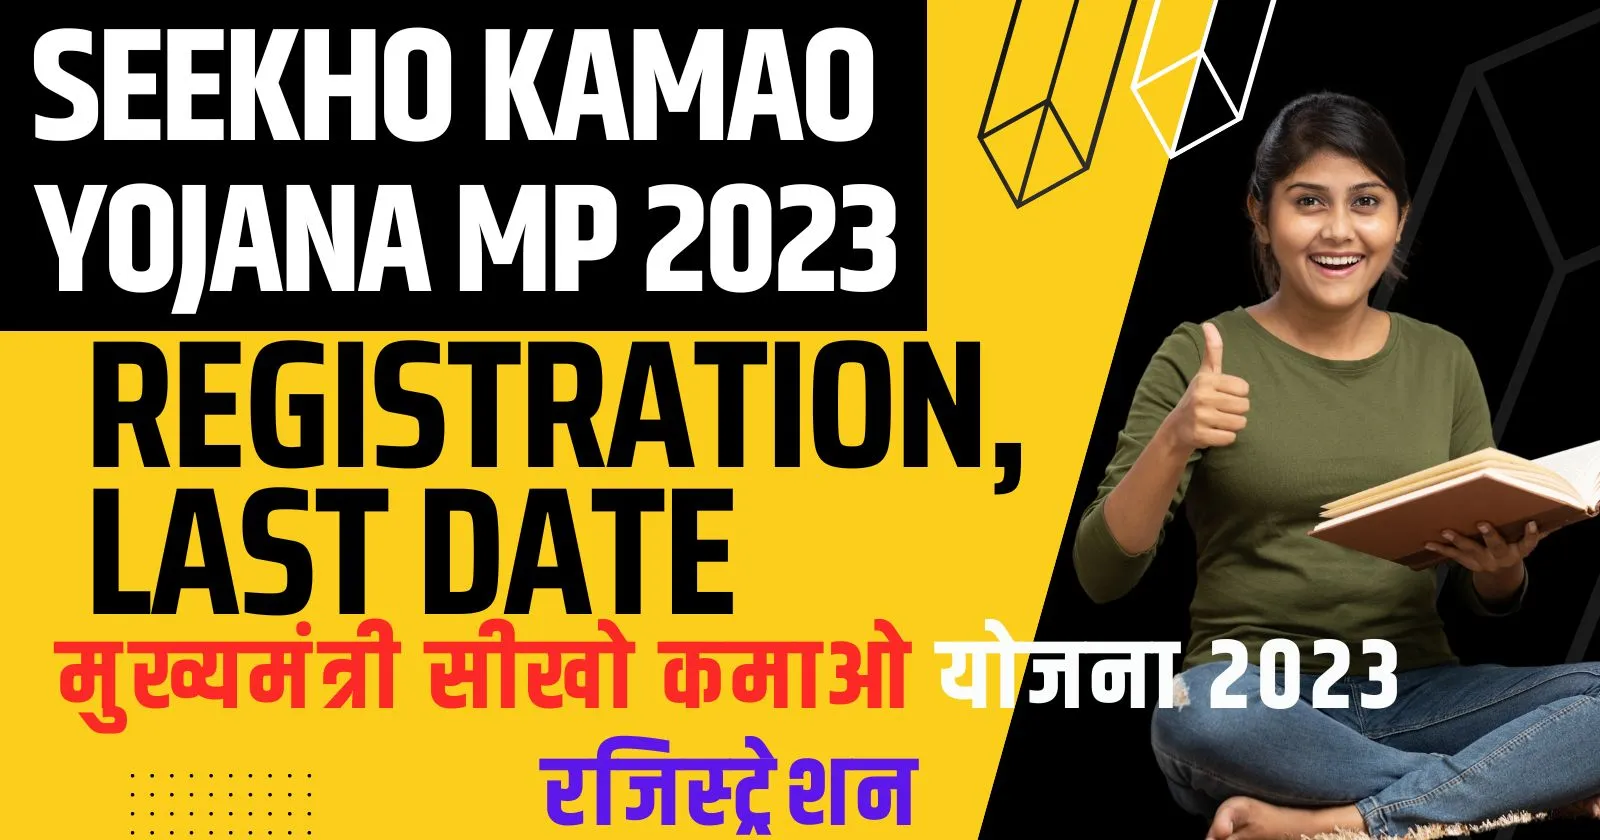 Seekho Kamao Yojana MP Registration, Last Date